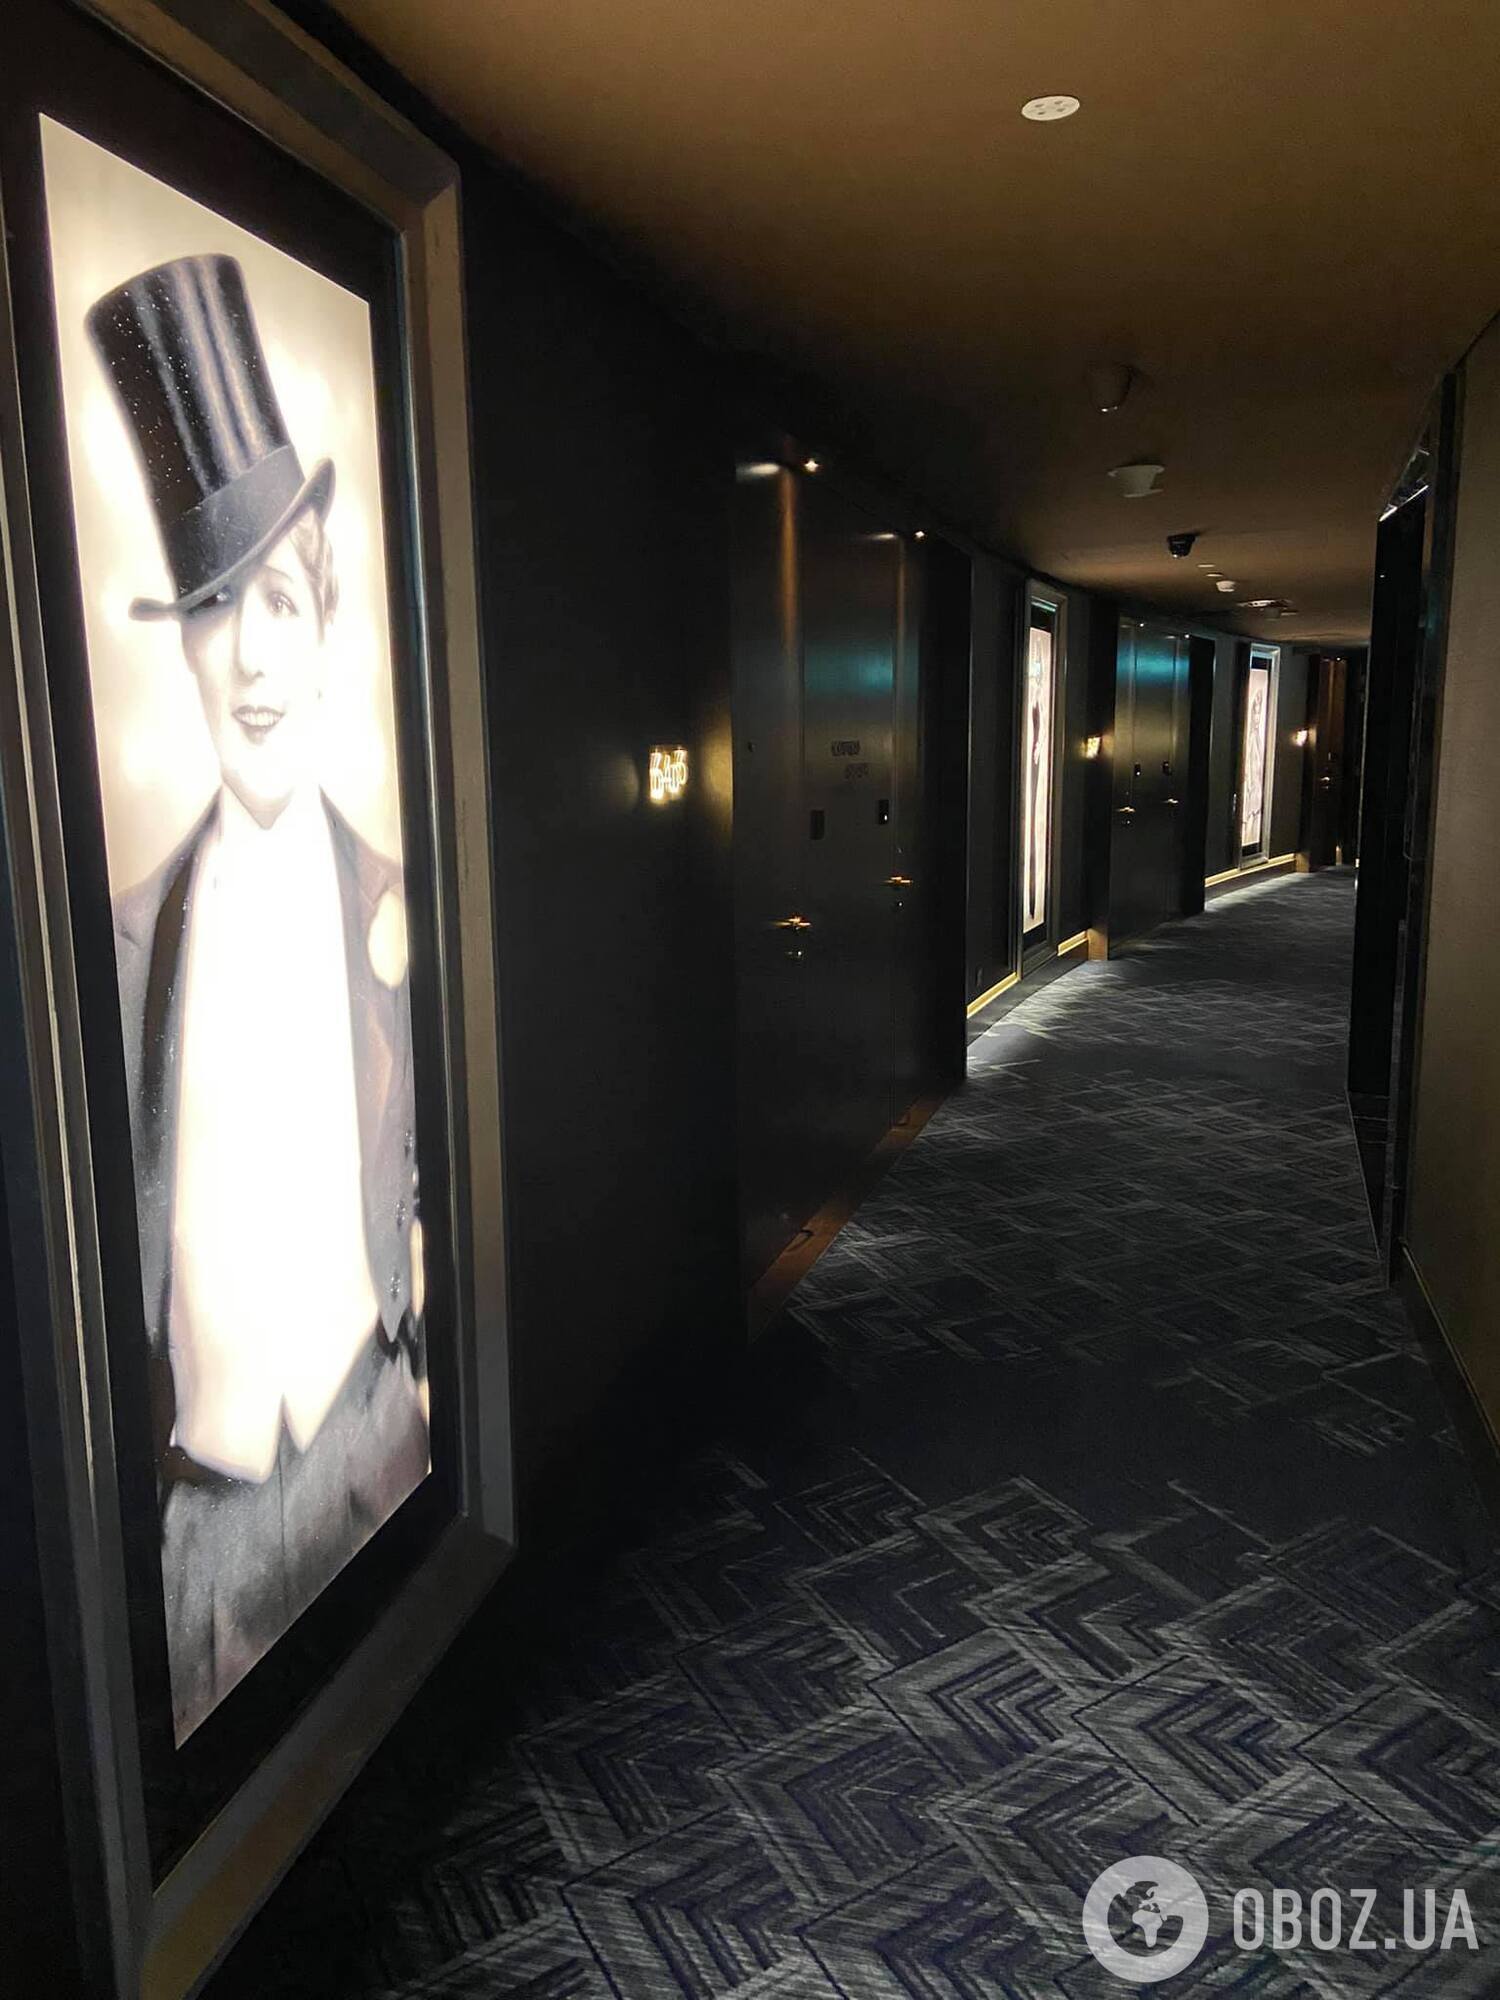 Затемнений коридор готелю з фотографіями зірок у готелі Paramount.